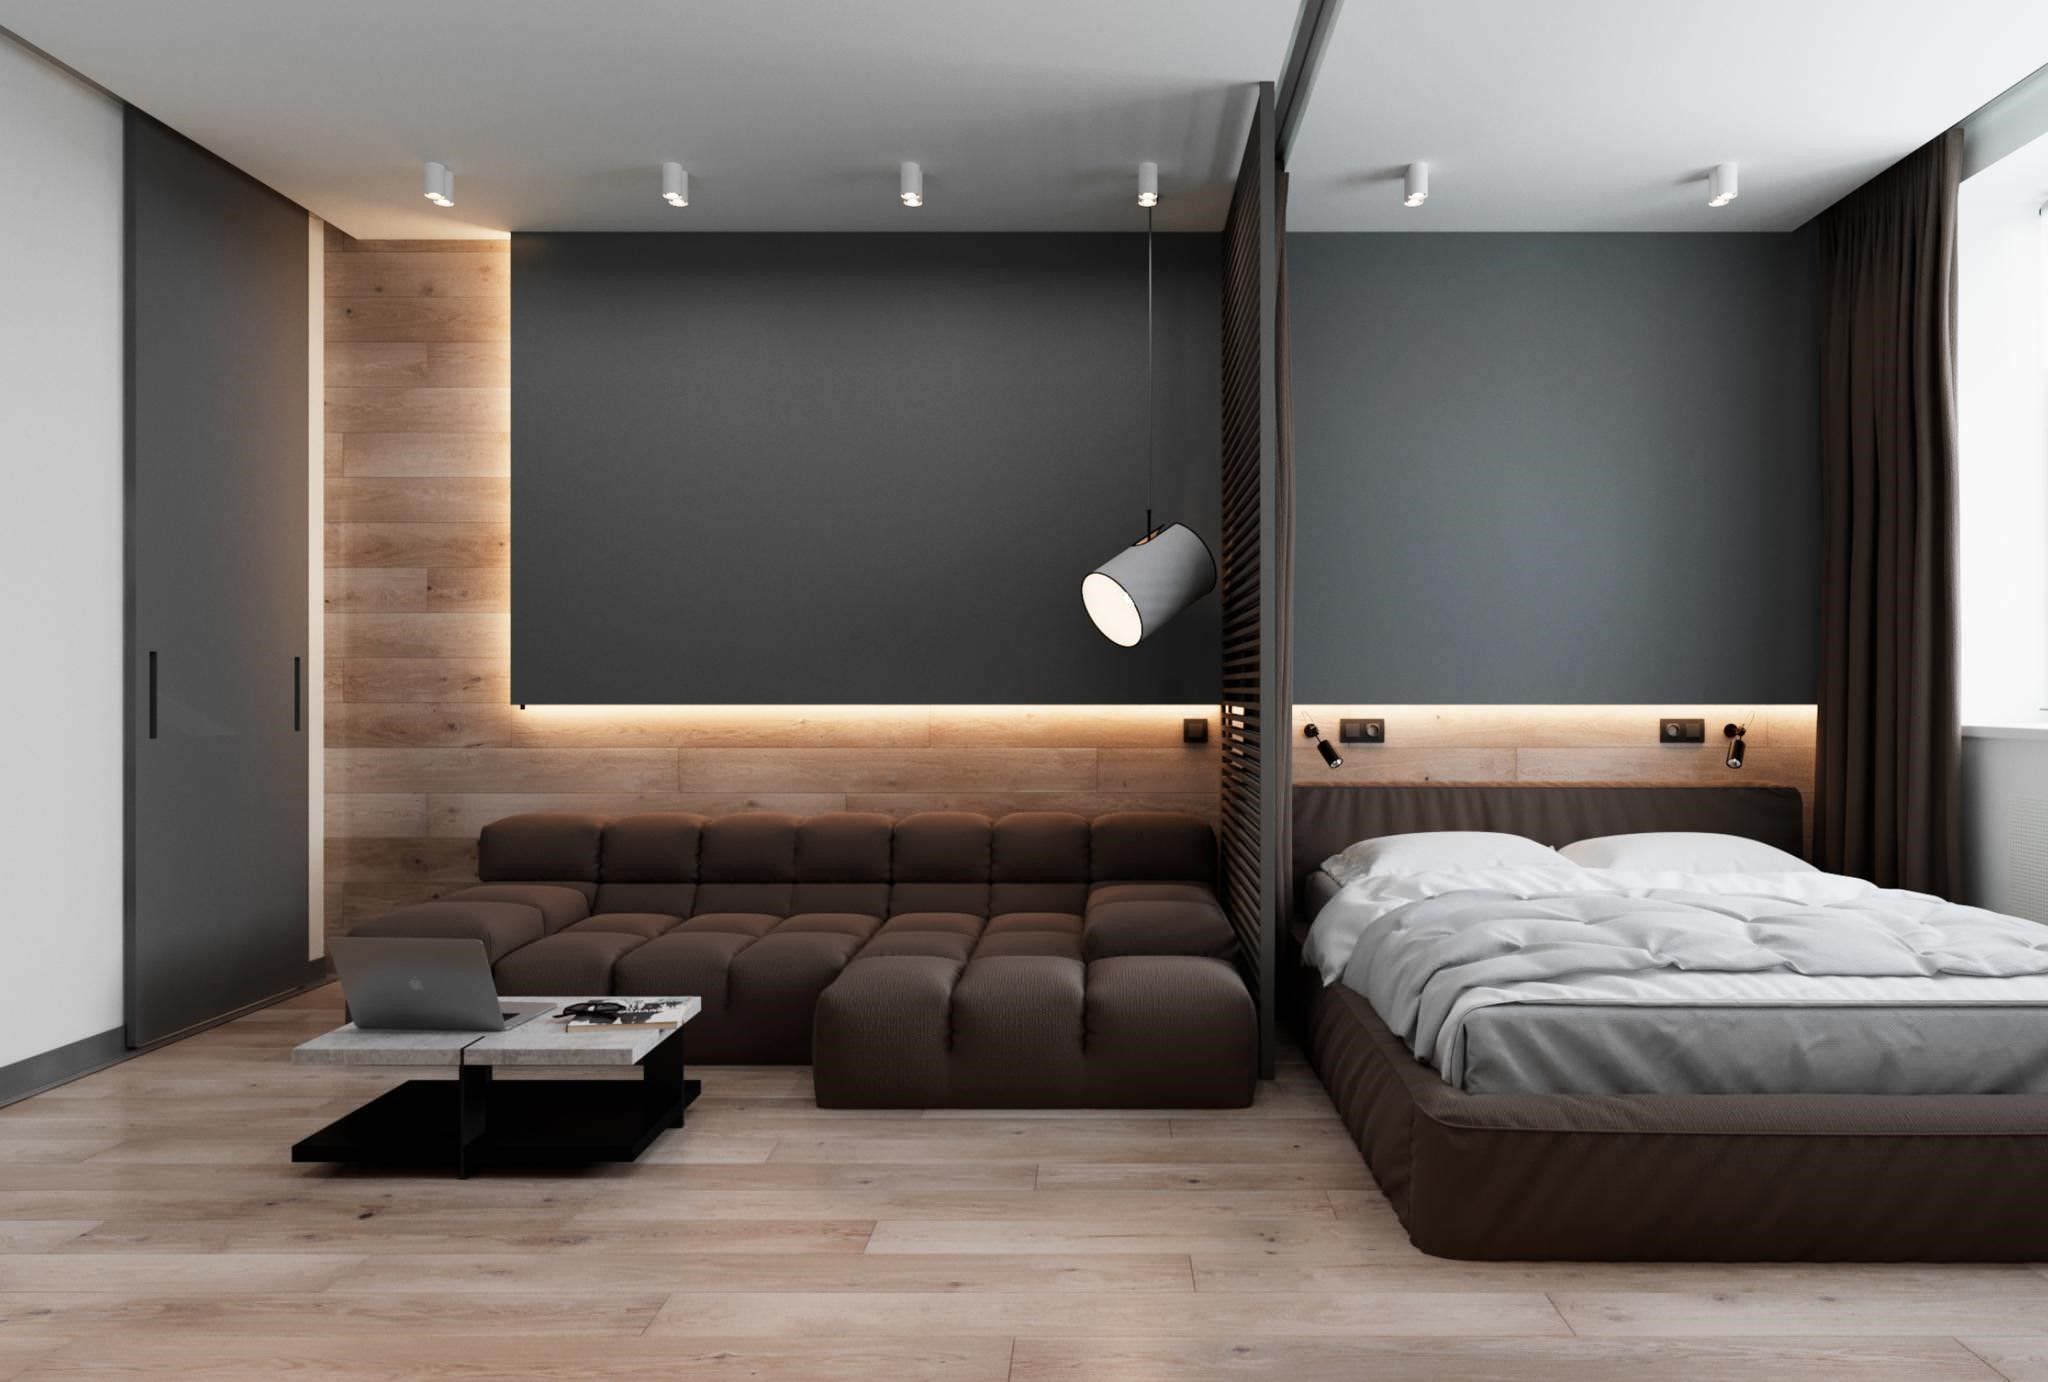 Vách lam gỗ phân chia phòng khách và phòng ngủ hiện đại và tiện nghi